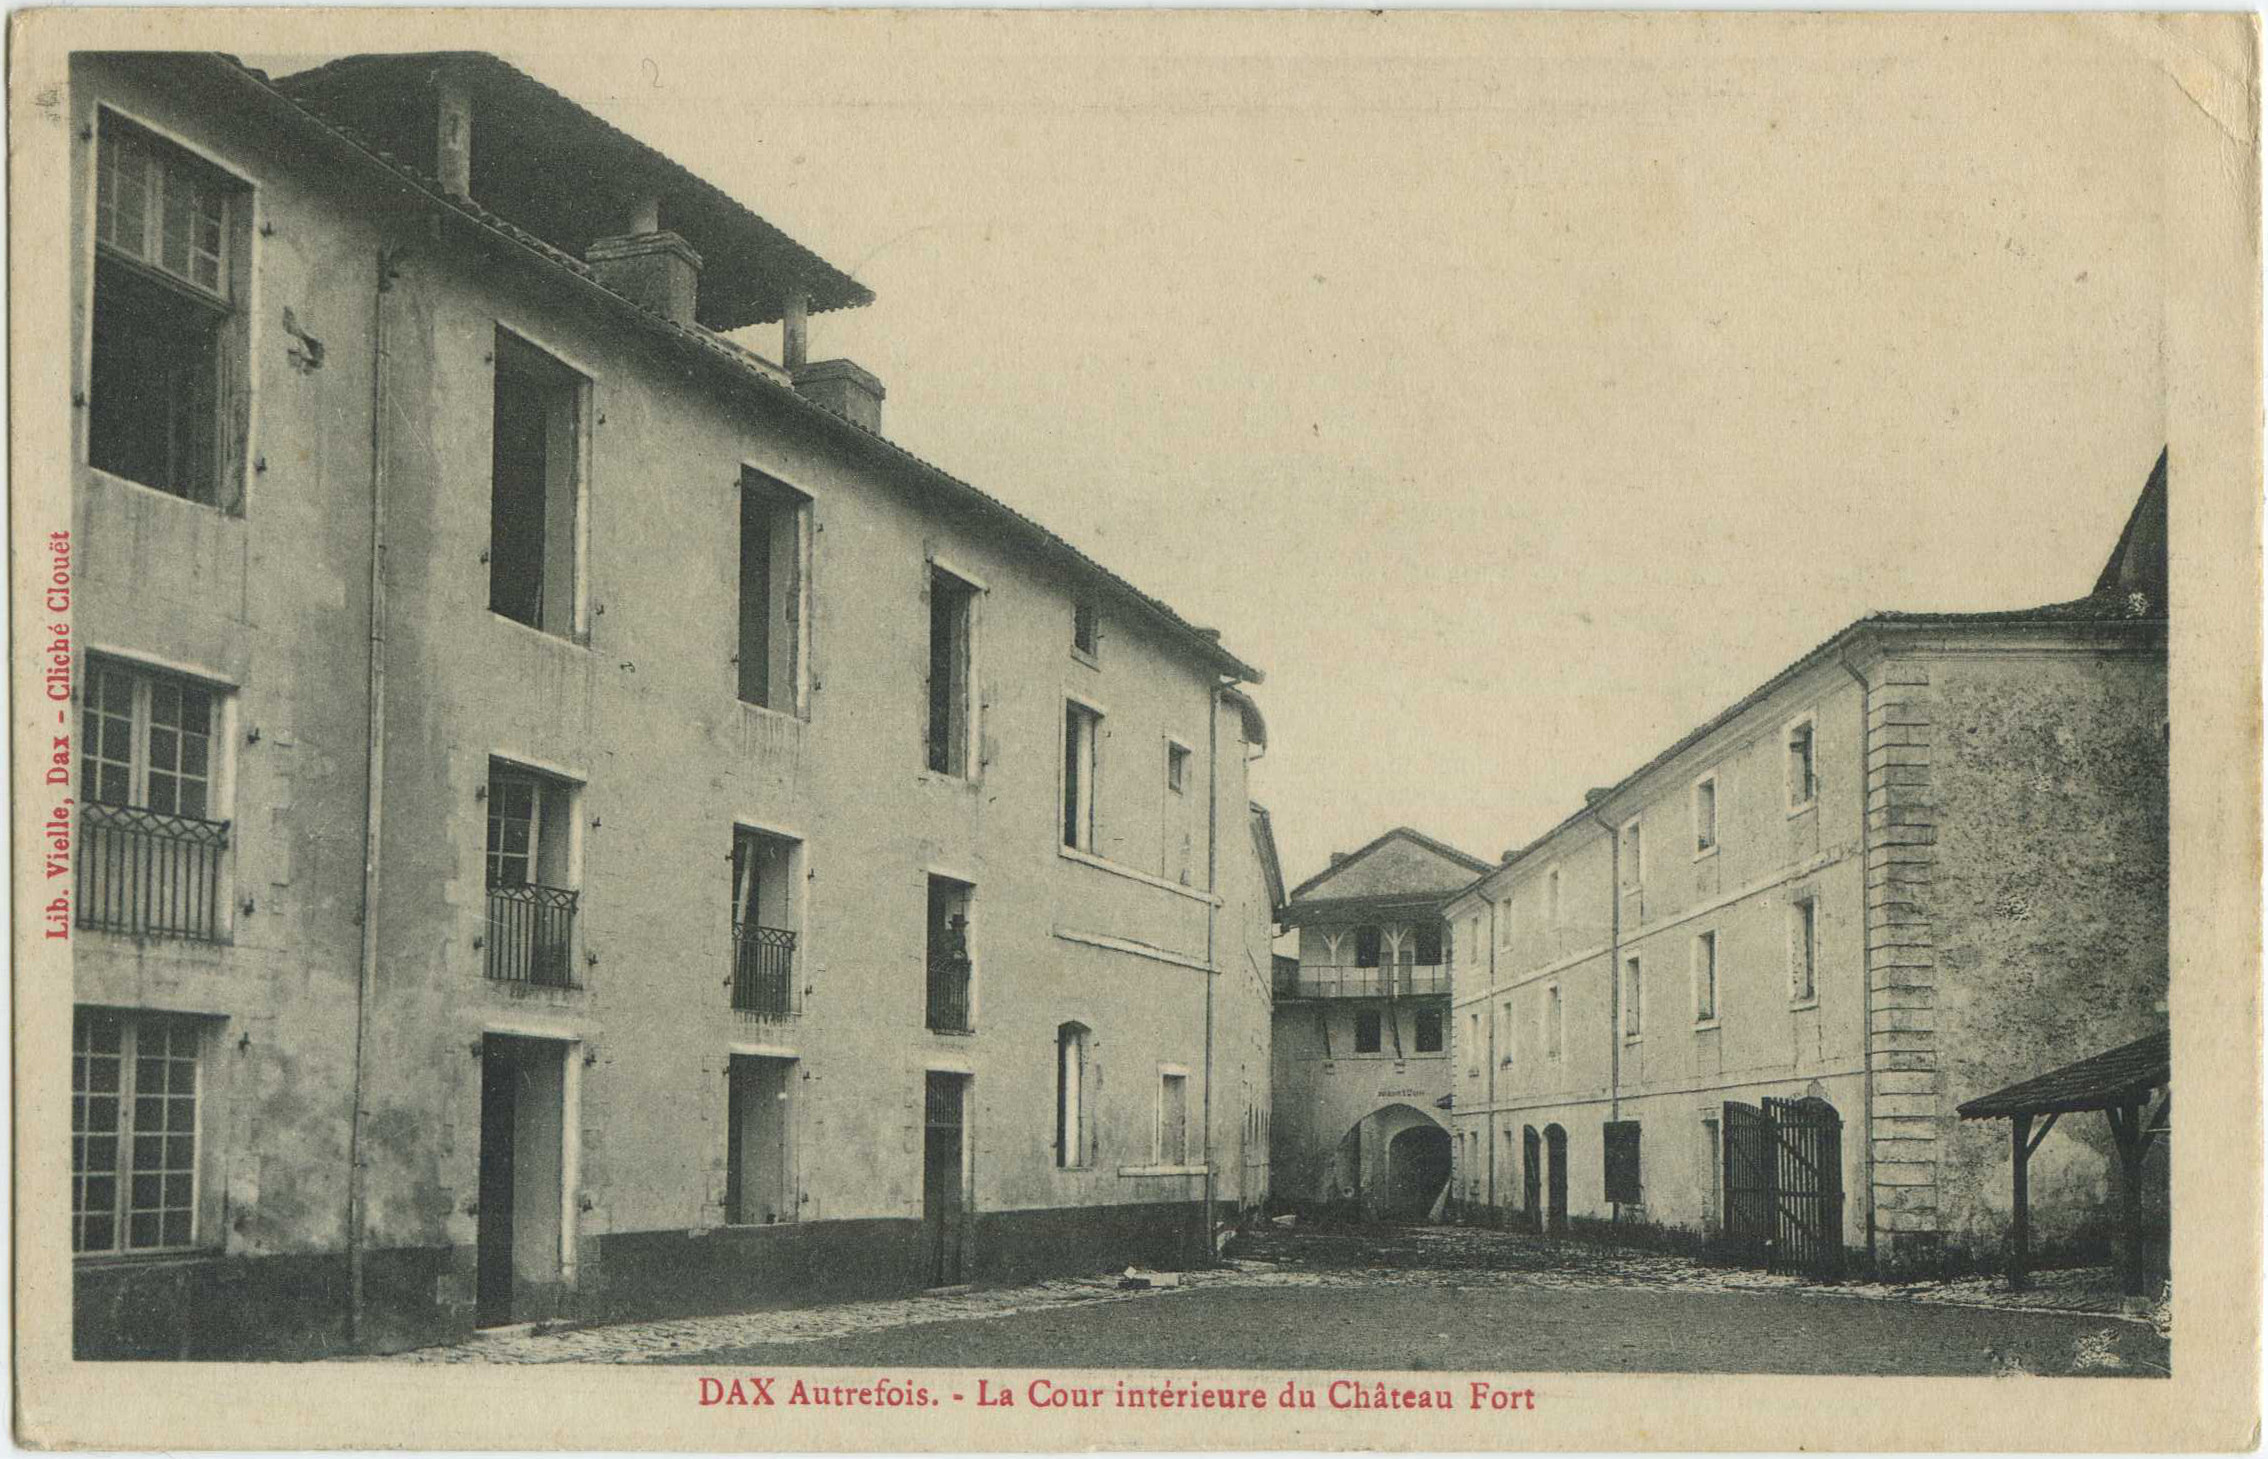 Dax - DAX Autrefois. - La Cour intérieure du Château Fort